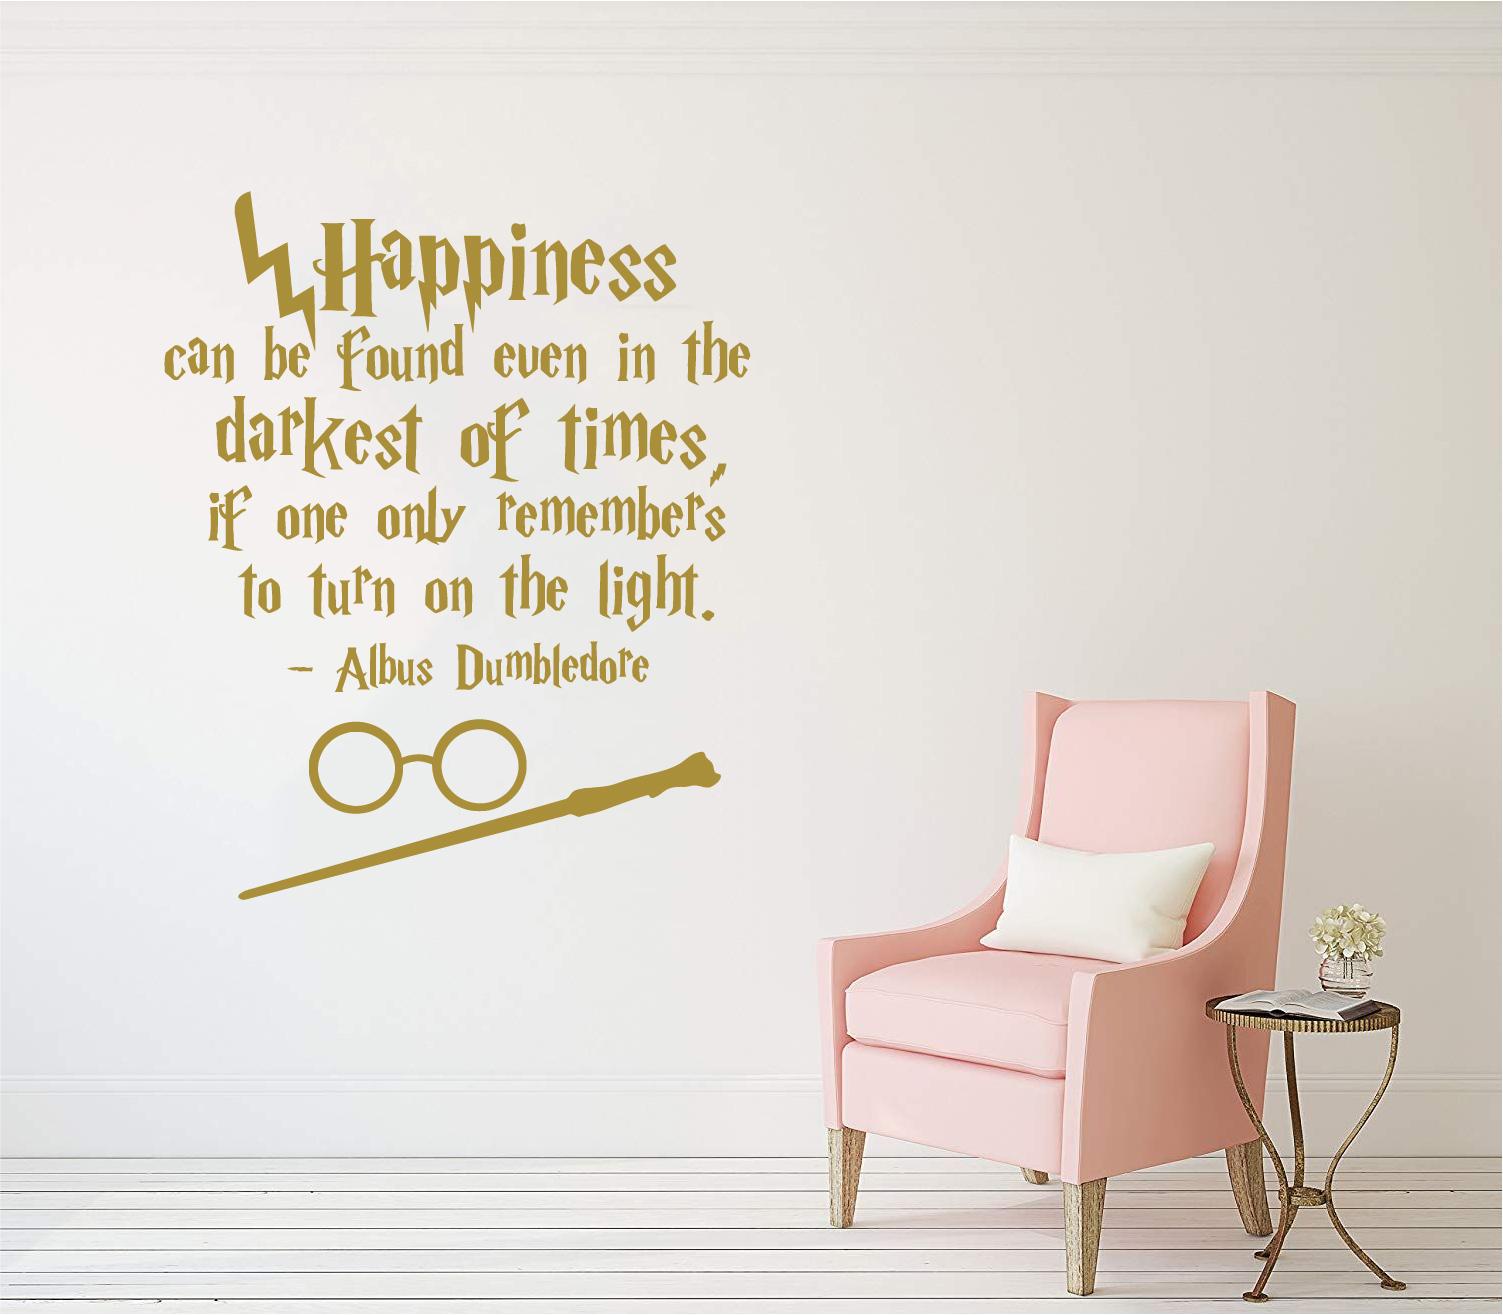 dumbledore quotes light